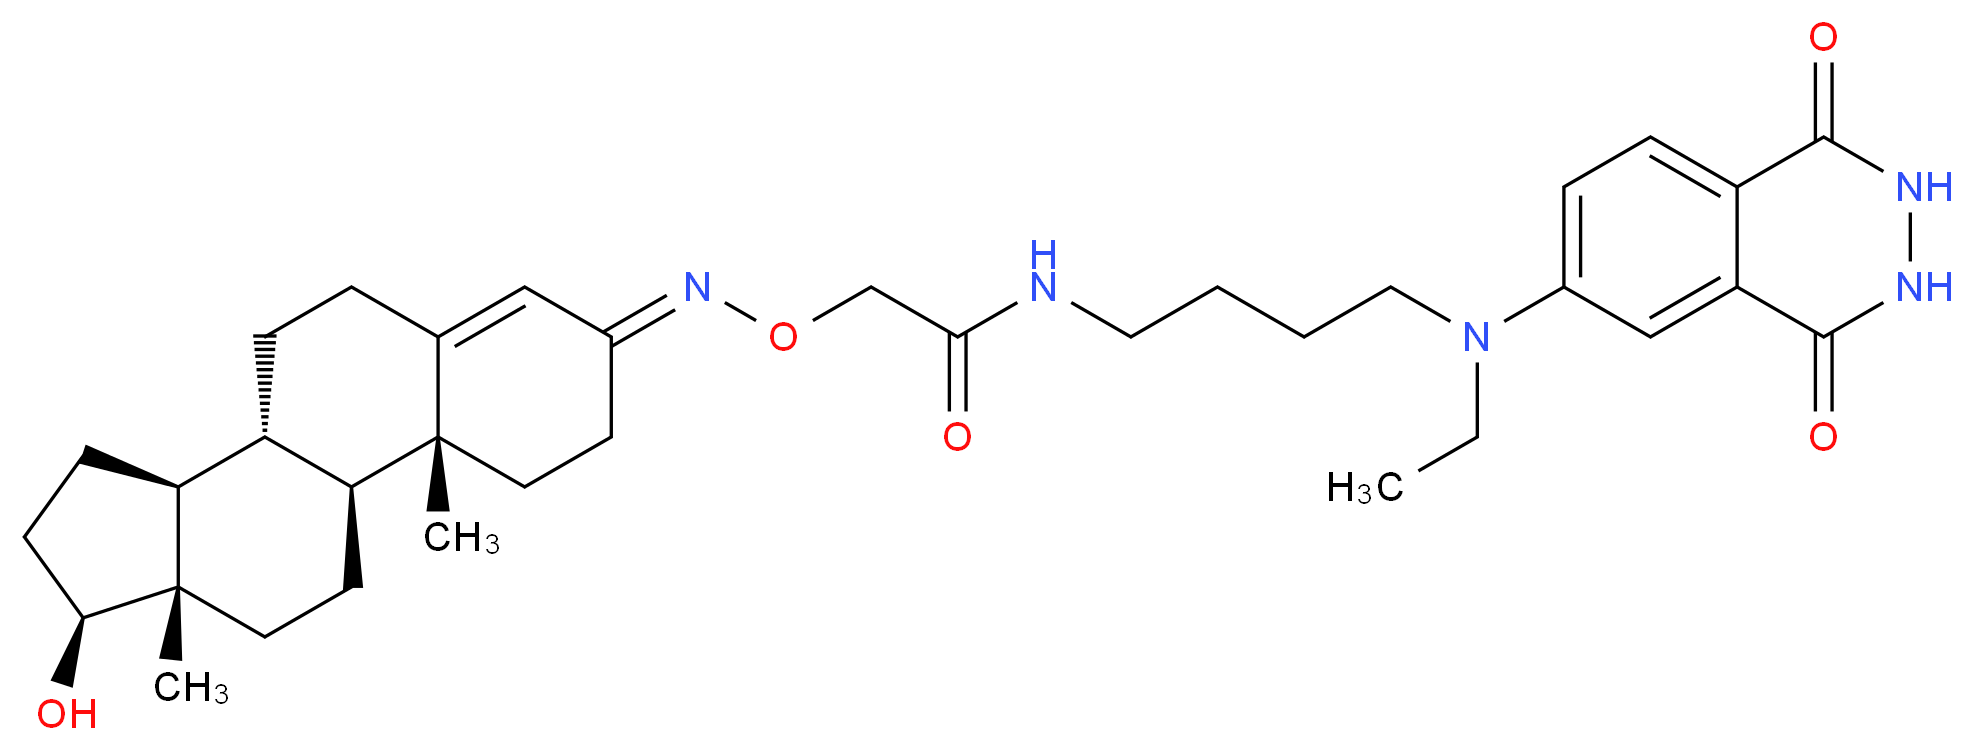 Testosterone-3-(O-carboxymethyl)oxime–N-(4-aminobutyl)-N-ethylisoluminol conjugate_Molecular_structure_CAS_82546-60-9)